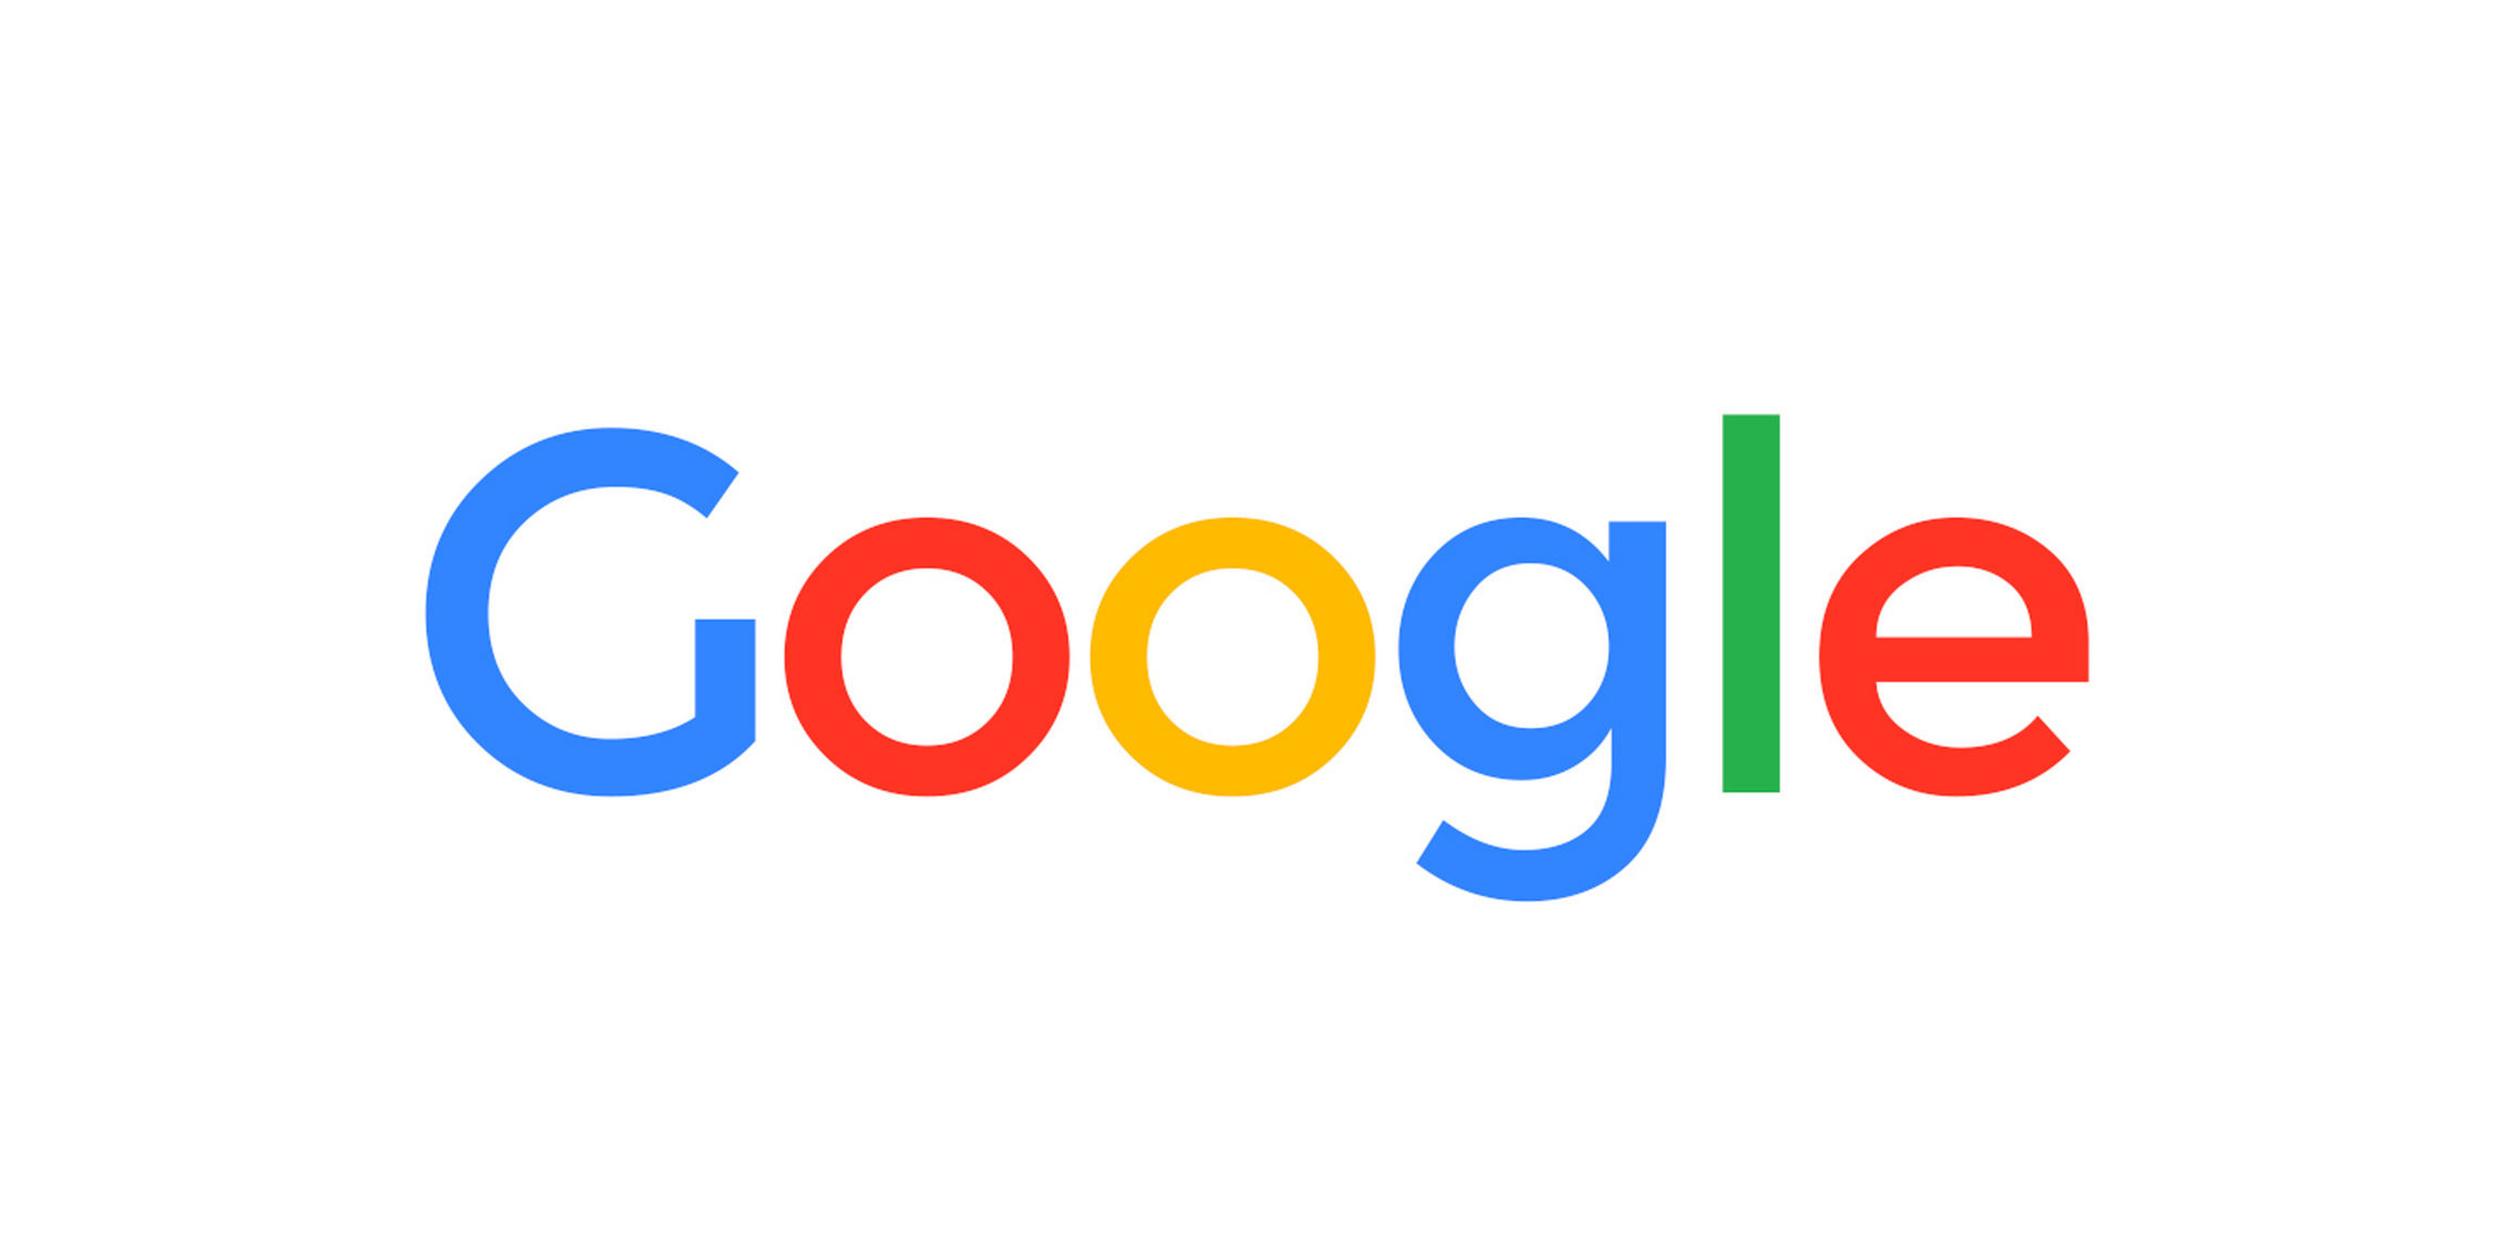 Esse novo atrativo do Google chega para  <p><span>ajudar empresas</span> </p> a tirarem o máximo proveito dessa data